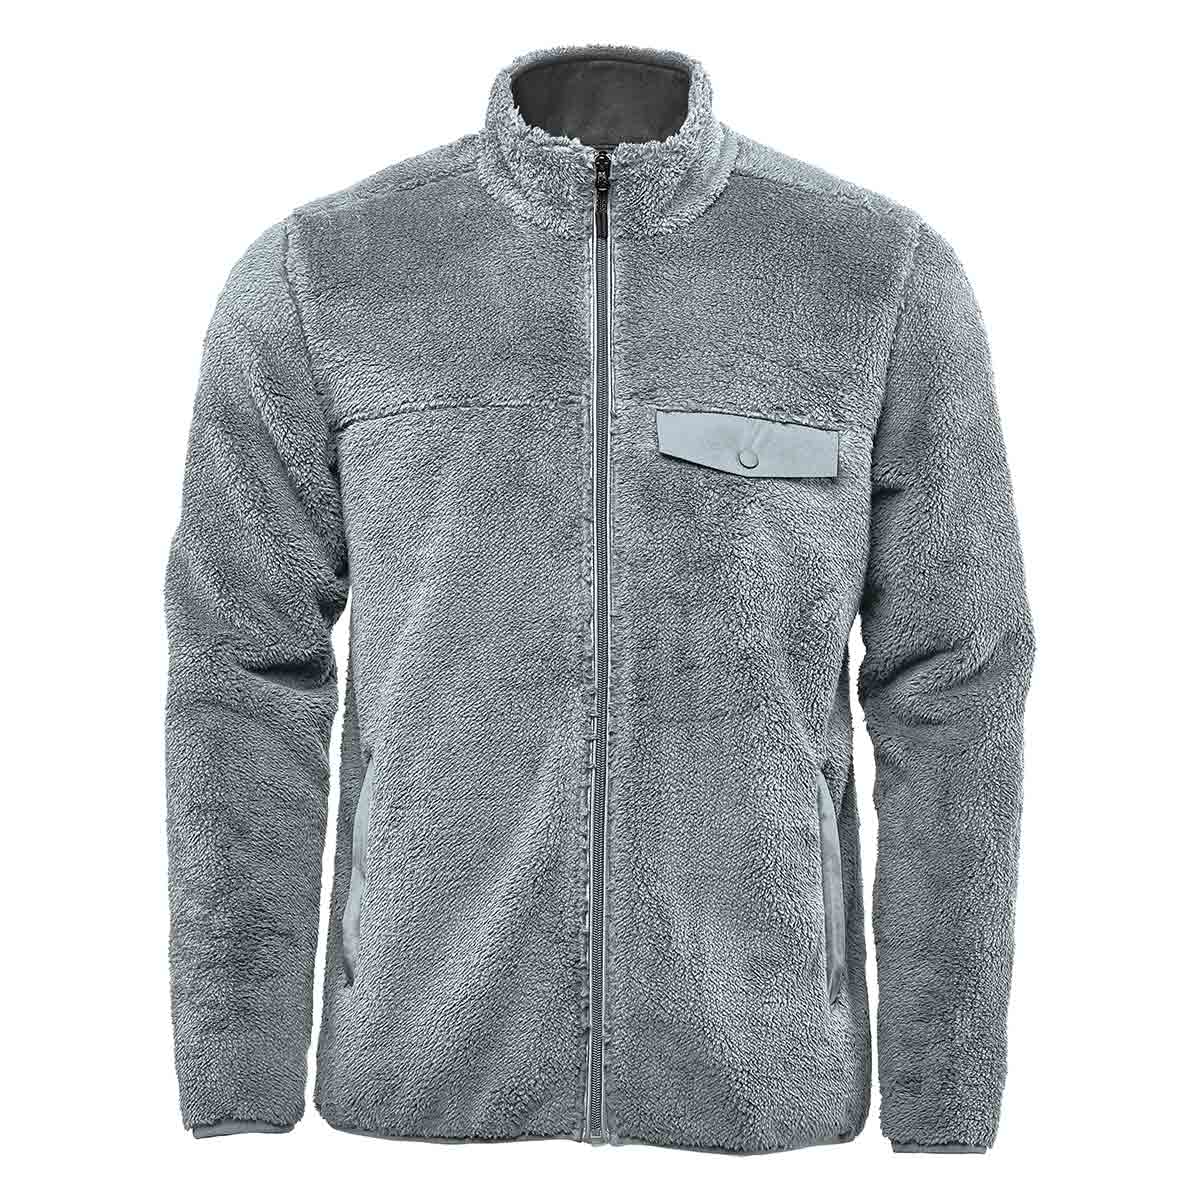 Buy Men's Fleece Jackets & Vests, Polar Fleece Jumpers